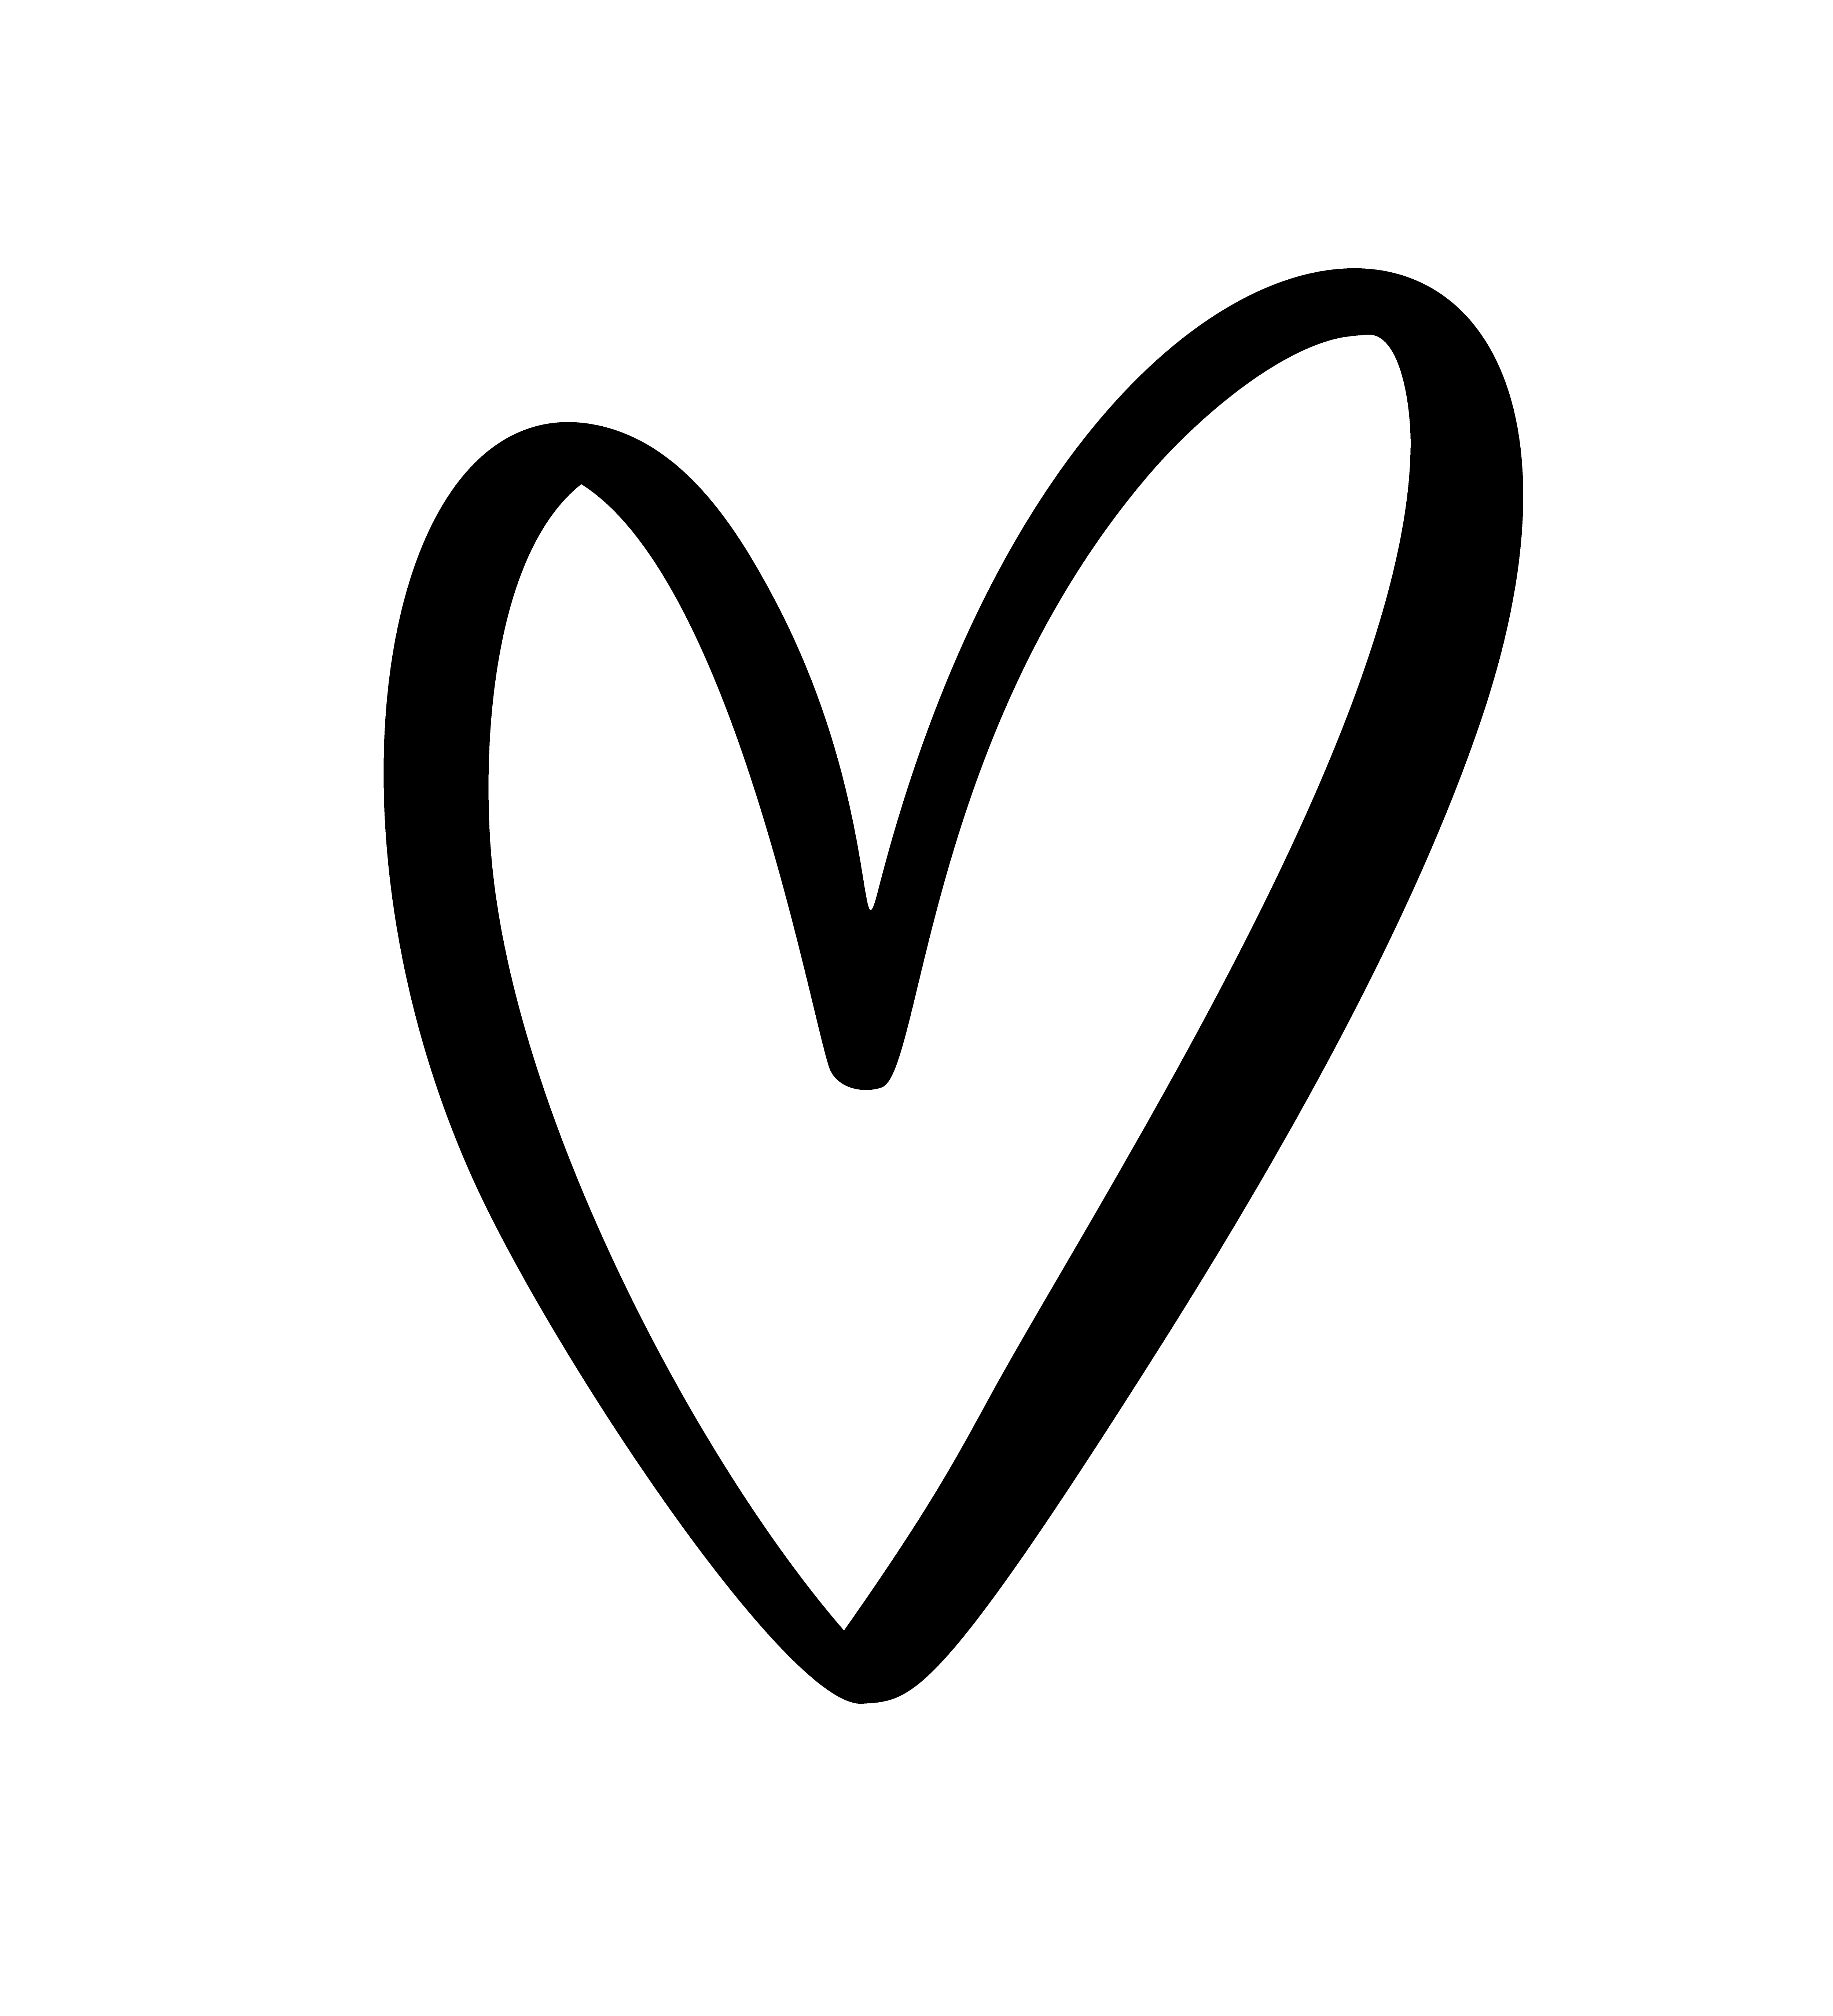 Calligraphic love heart sign 374516 Vector Art at Vecteezy